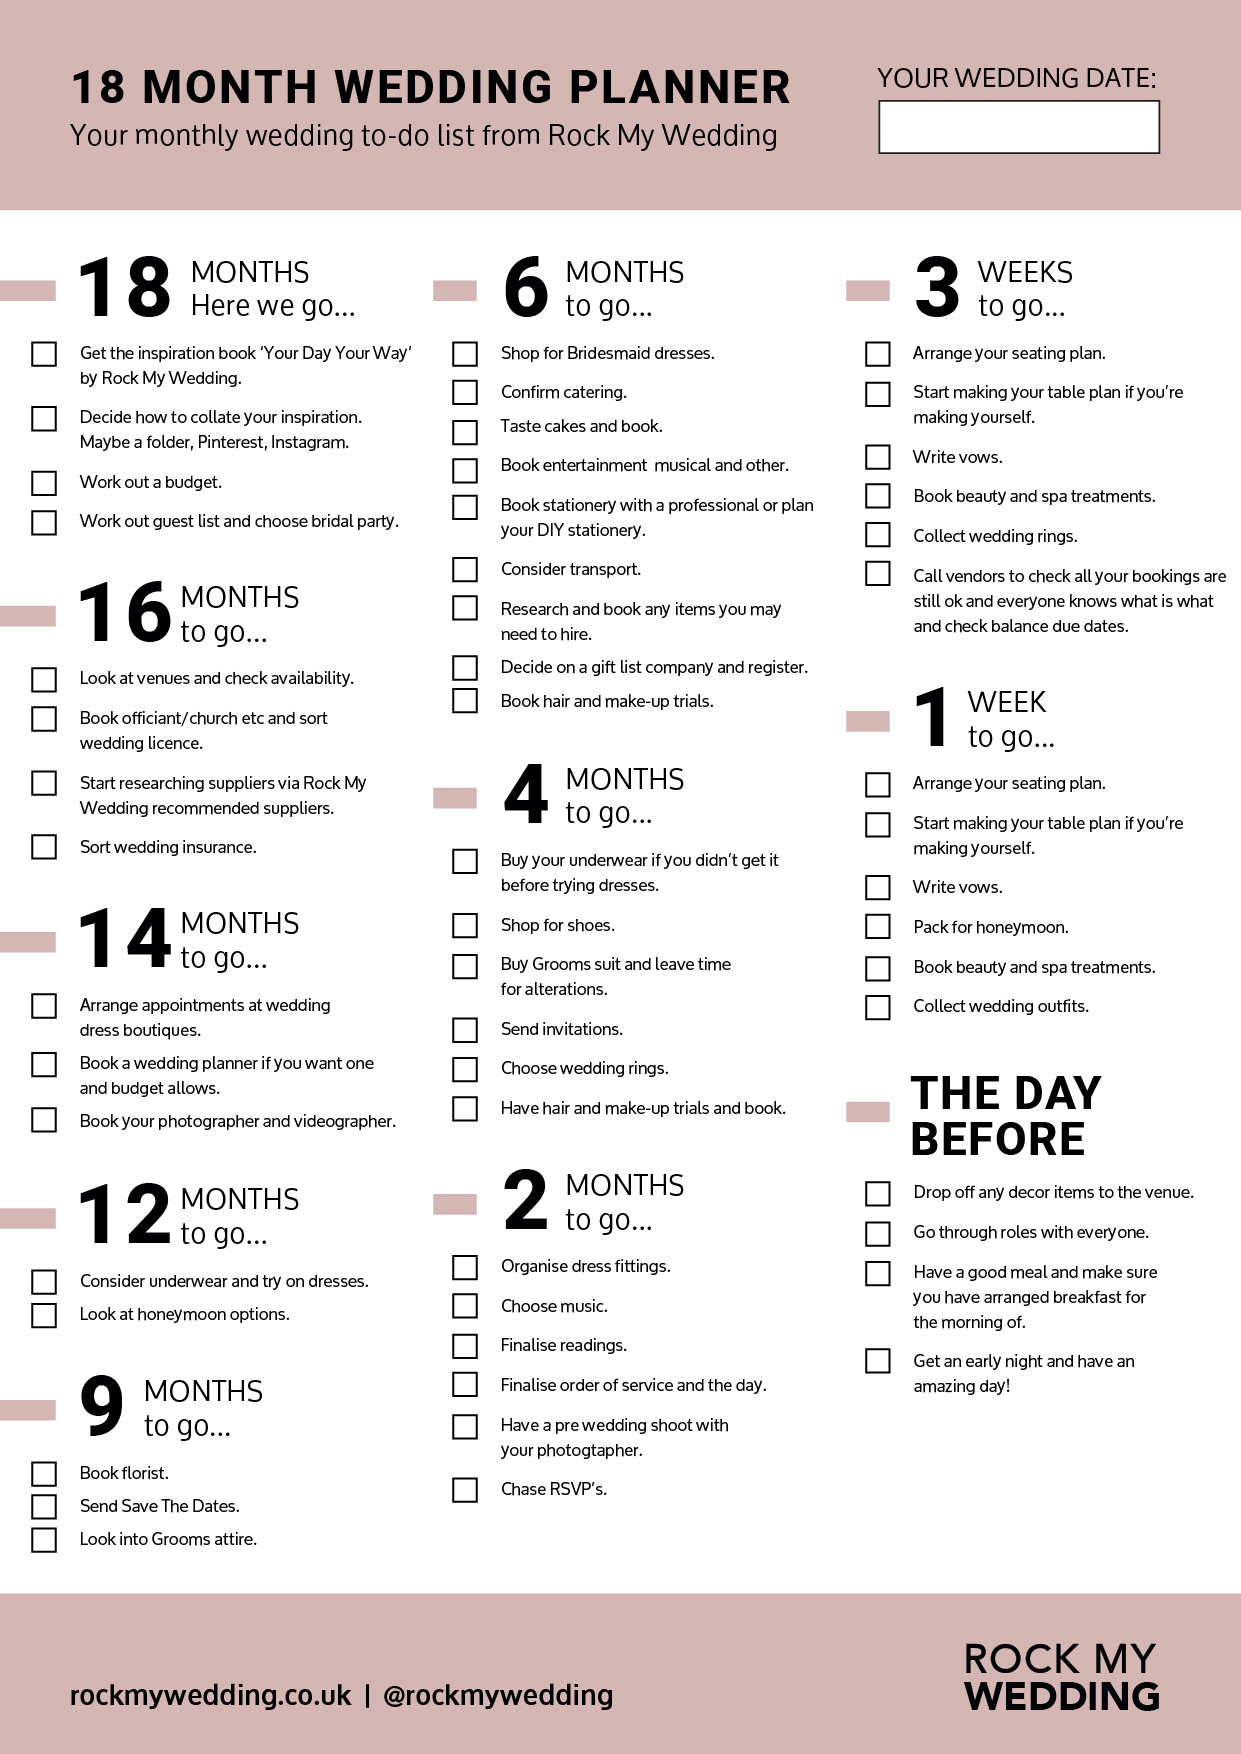 18 month wedding planning checklist DEC 2020-01.jpg